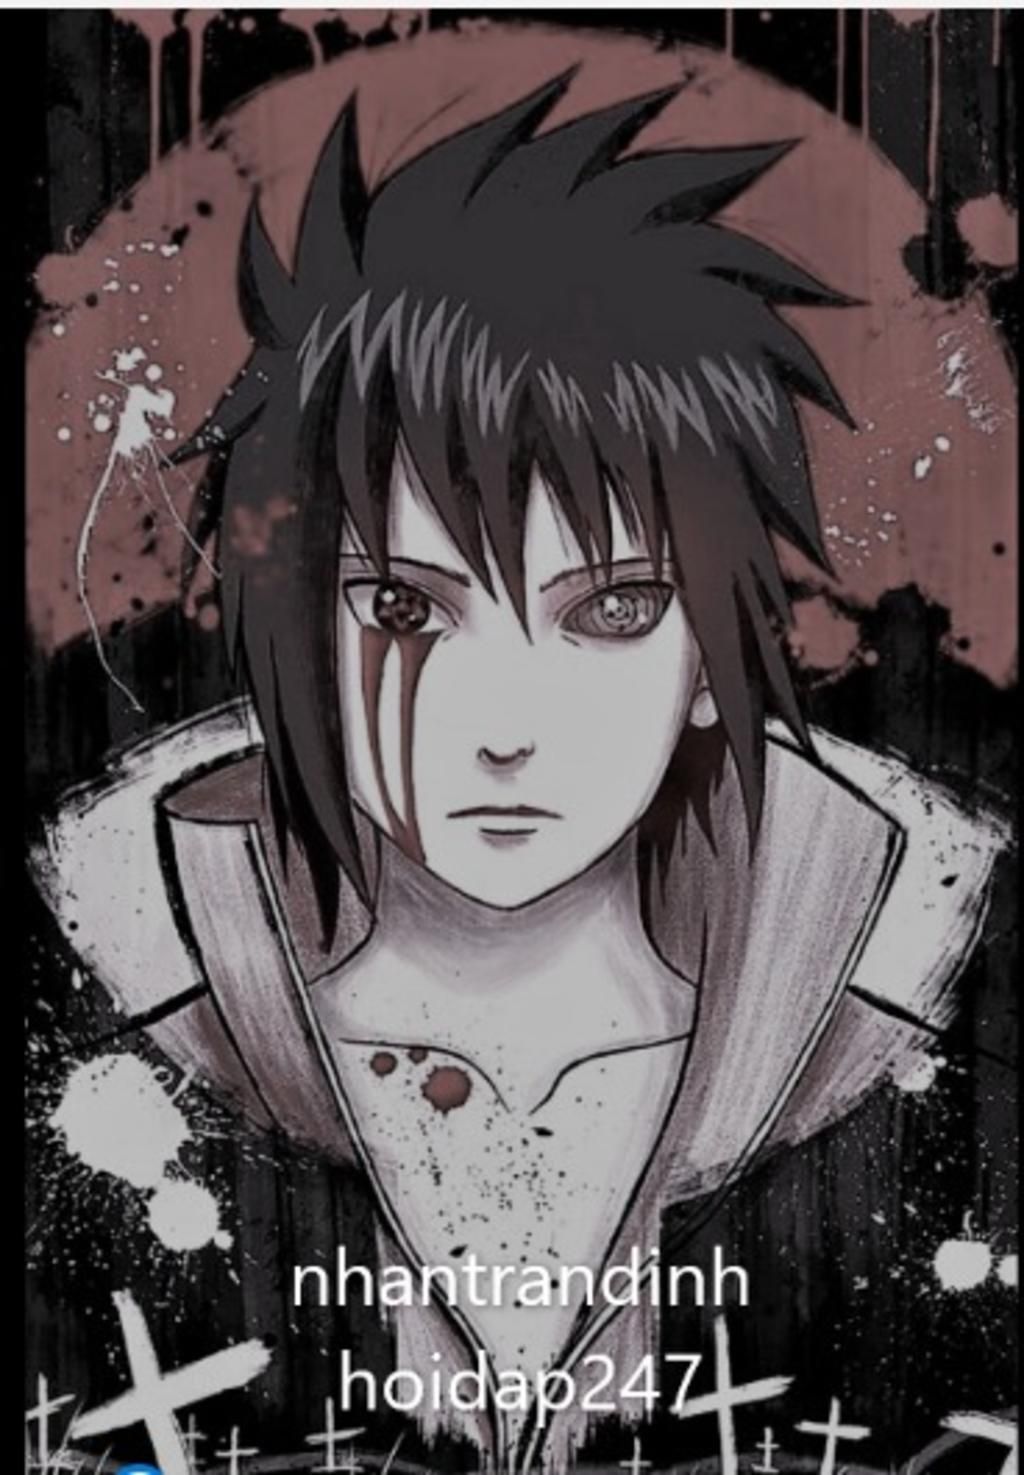 Ảnh Sasuke ngầu: Sasuke Uchiha là một trong những nhân vật được yêu thích nhất trong bộ truyện tranh Naruto. Với phong cách ngầu nhưng cũng không kém phần lịch lãm, hình ảnh Sasuke luôn thu hút sự chú ý của các fan hâm mộ. Những bức ảnh về Sasuke mang đến sự trầm lắng, đầy sức cuốn hút. Hãy đến và thưởng thức những khoảnh khắc đầy mê hoặc của Sasuke trong ảnh!